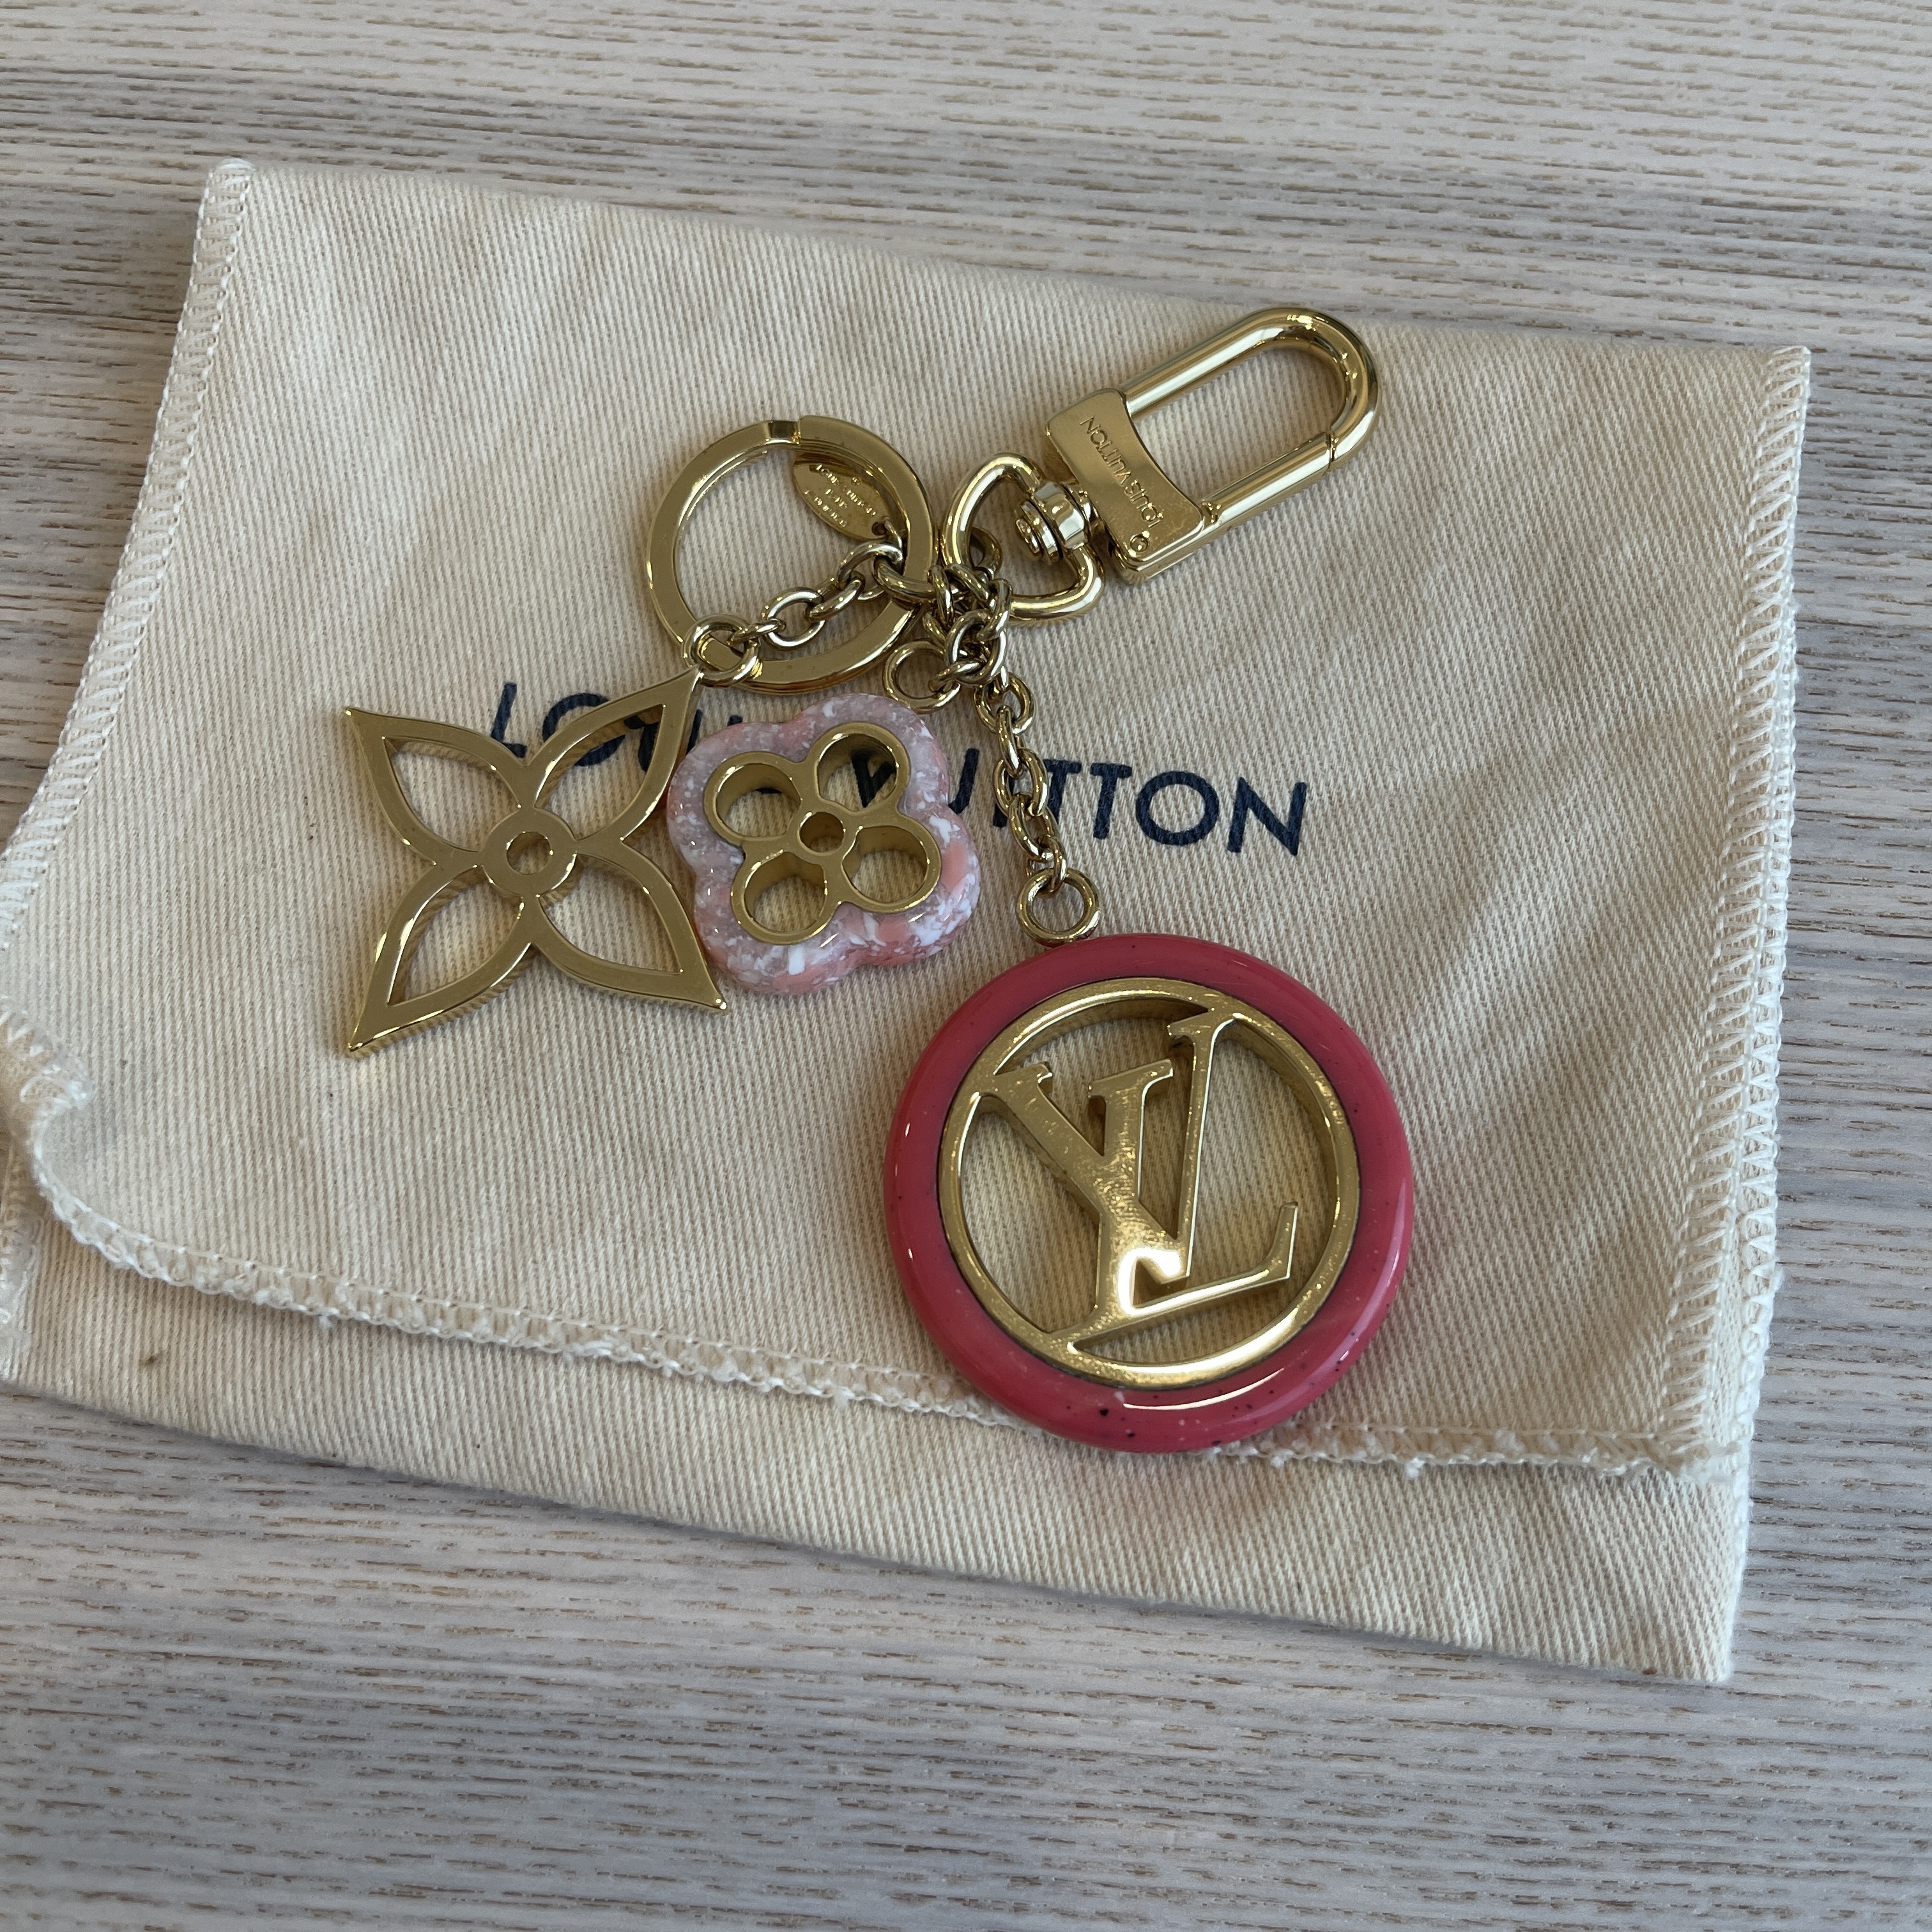 Louis Vuitton Colorline Bag Charm/Keyring Review 